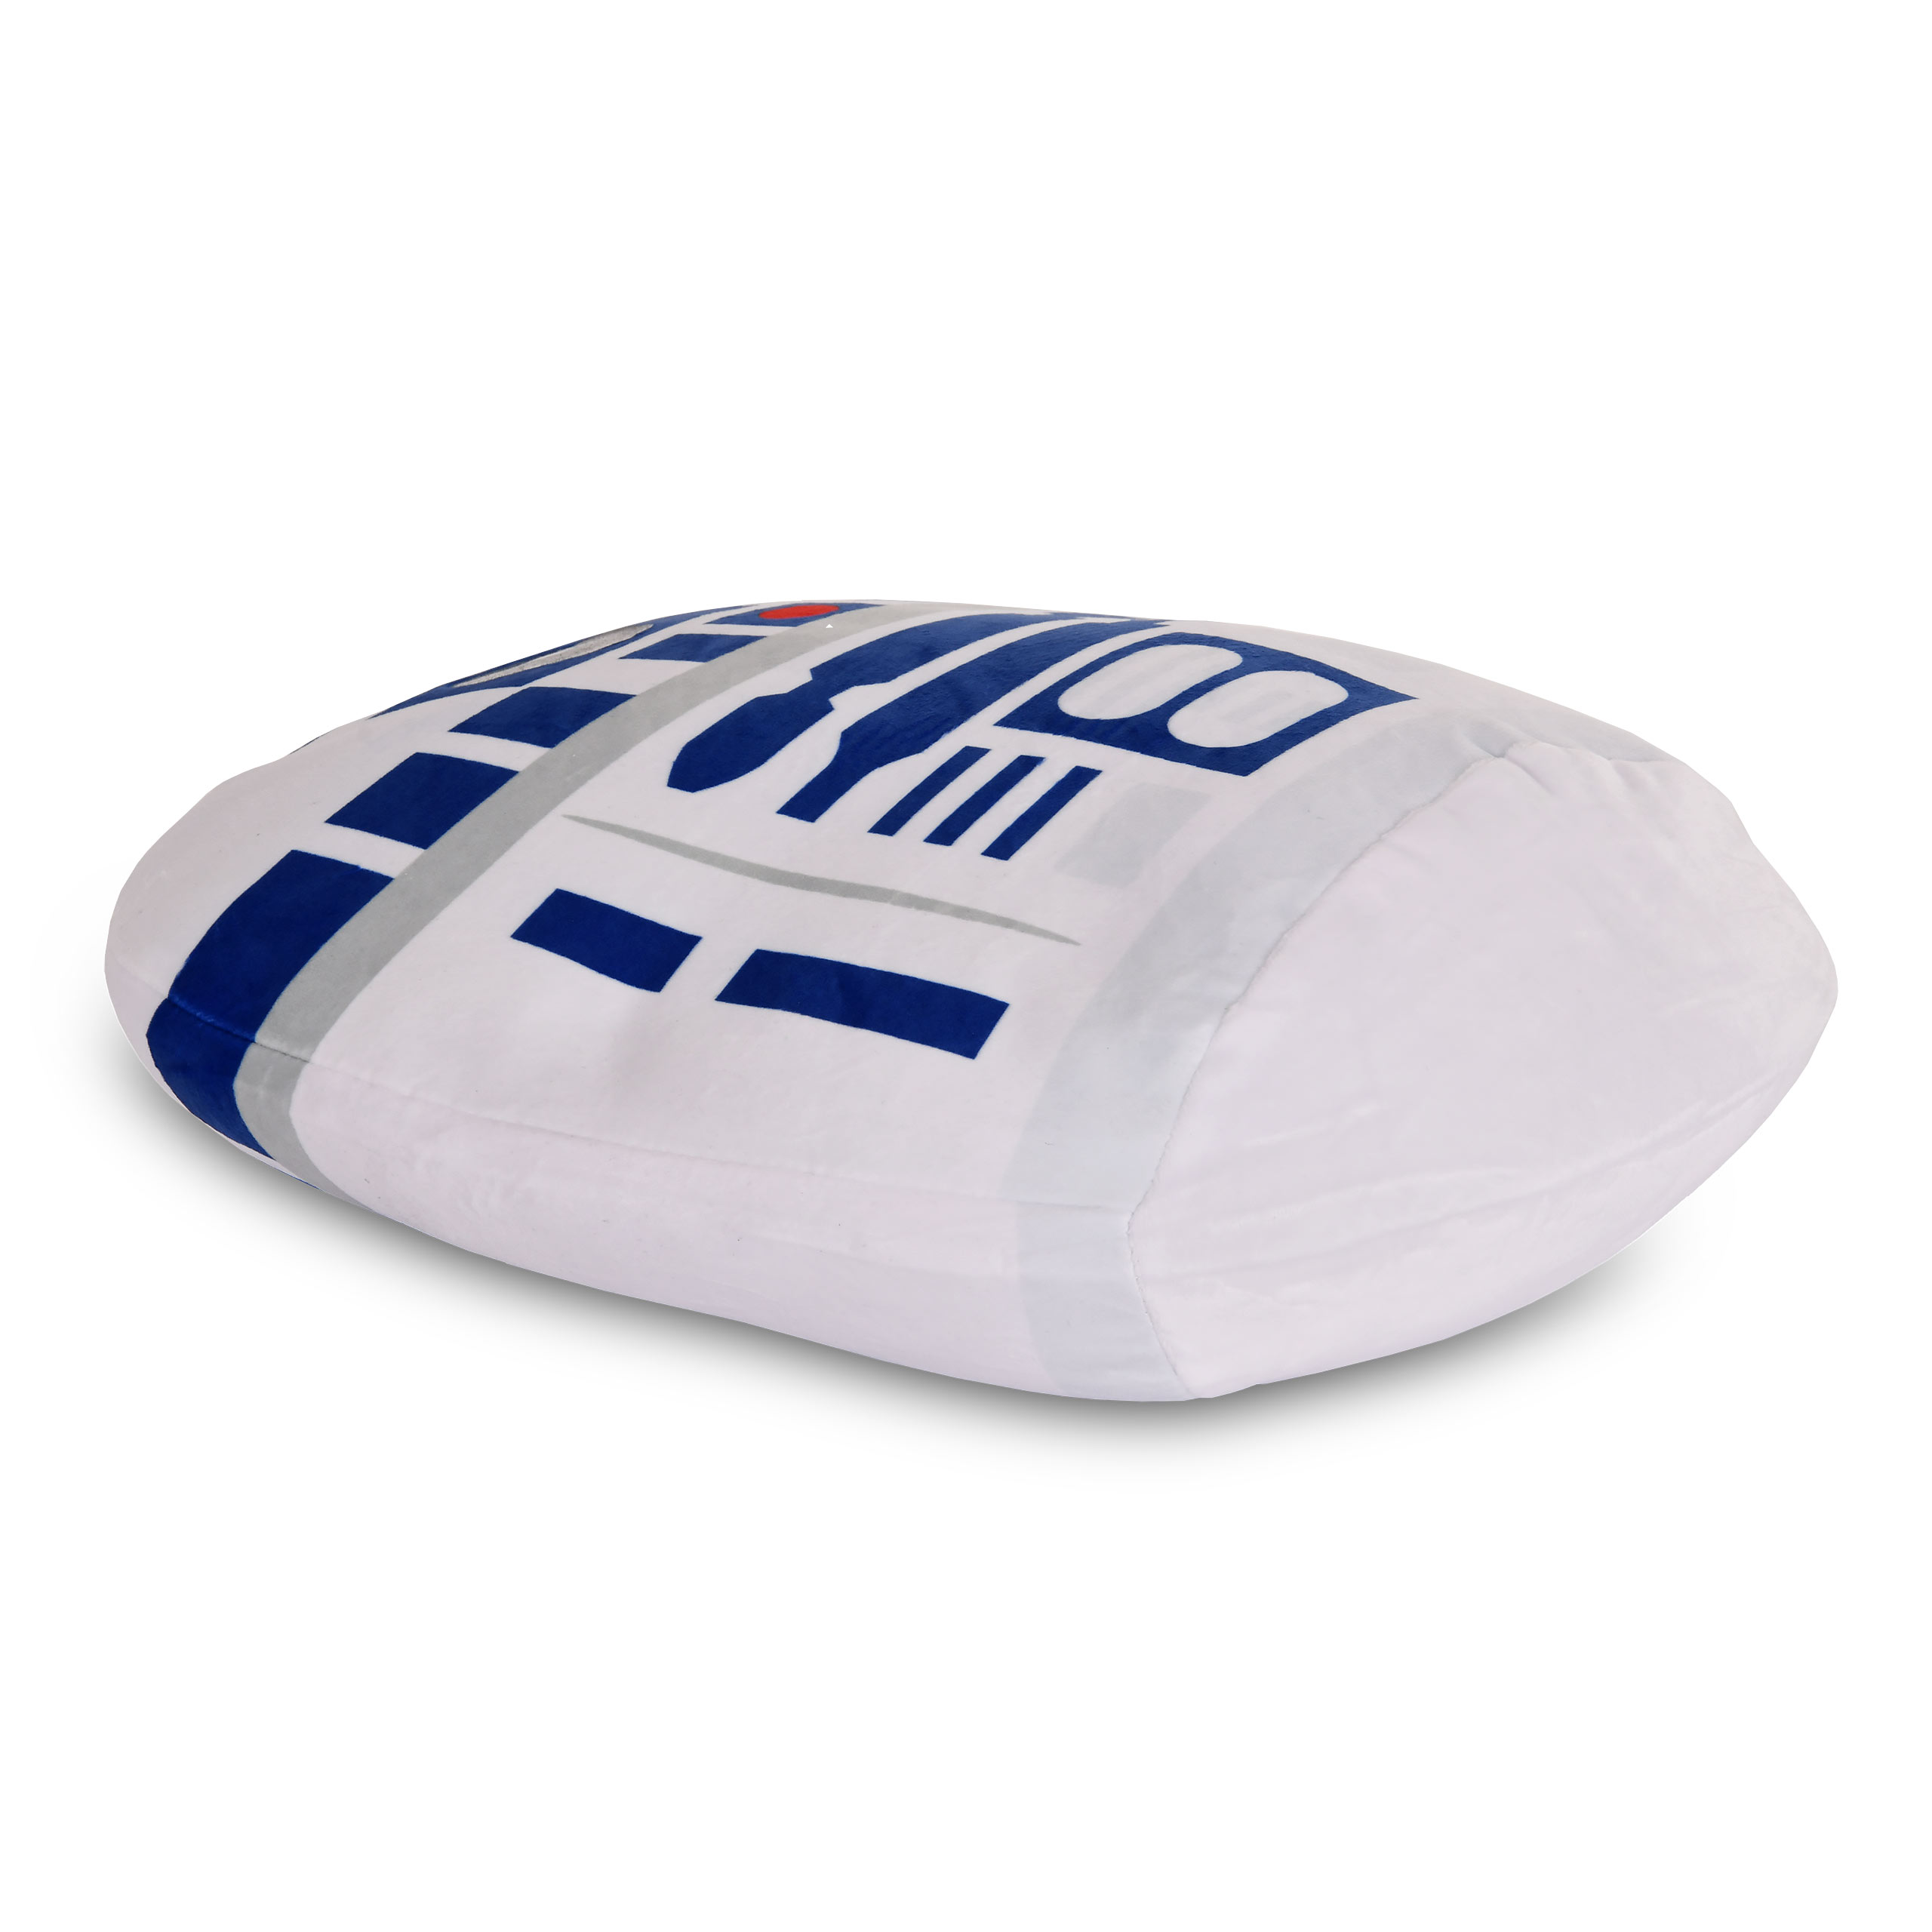 Star Wars - R2-D2 Squishy Beanies Plush Pillow 35cm